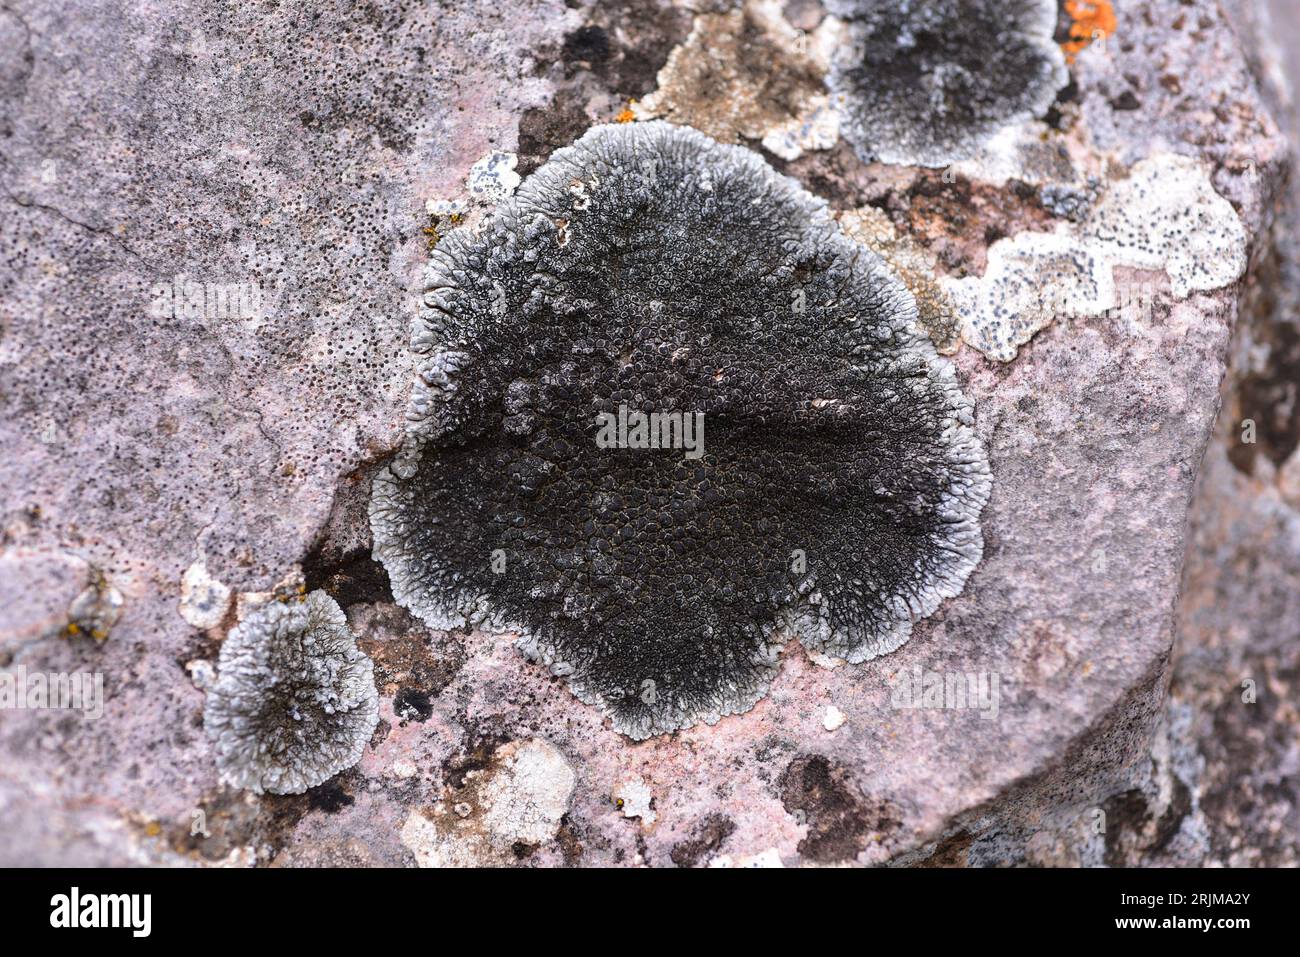 Lobothallia radiosa oder Lecanora radiosa ist eine Krustenflechte, die auf kalkhaltigem Gestein wächst. Dieses Foto wurde in Alquézar, Huesca, Aragón, Spanien aufgenommen. Stockfoto